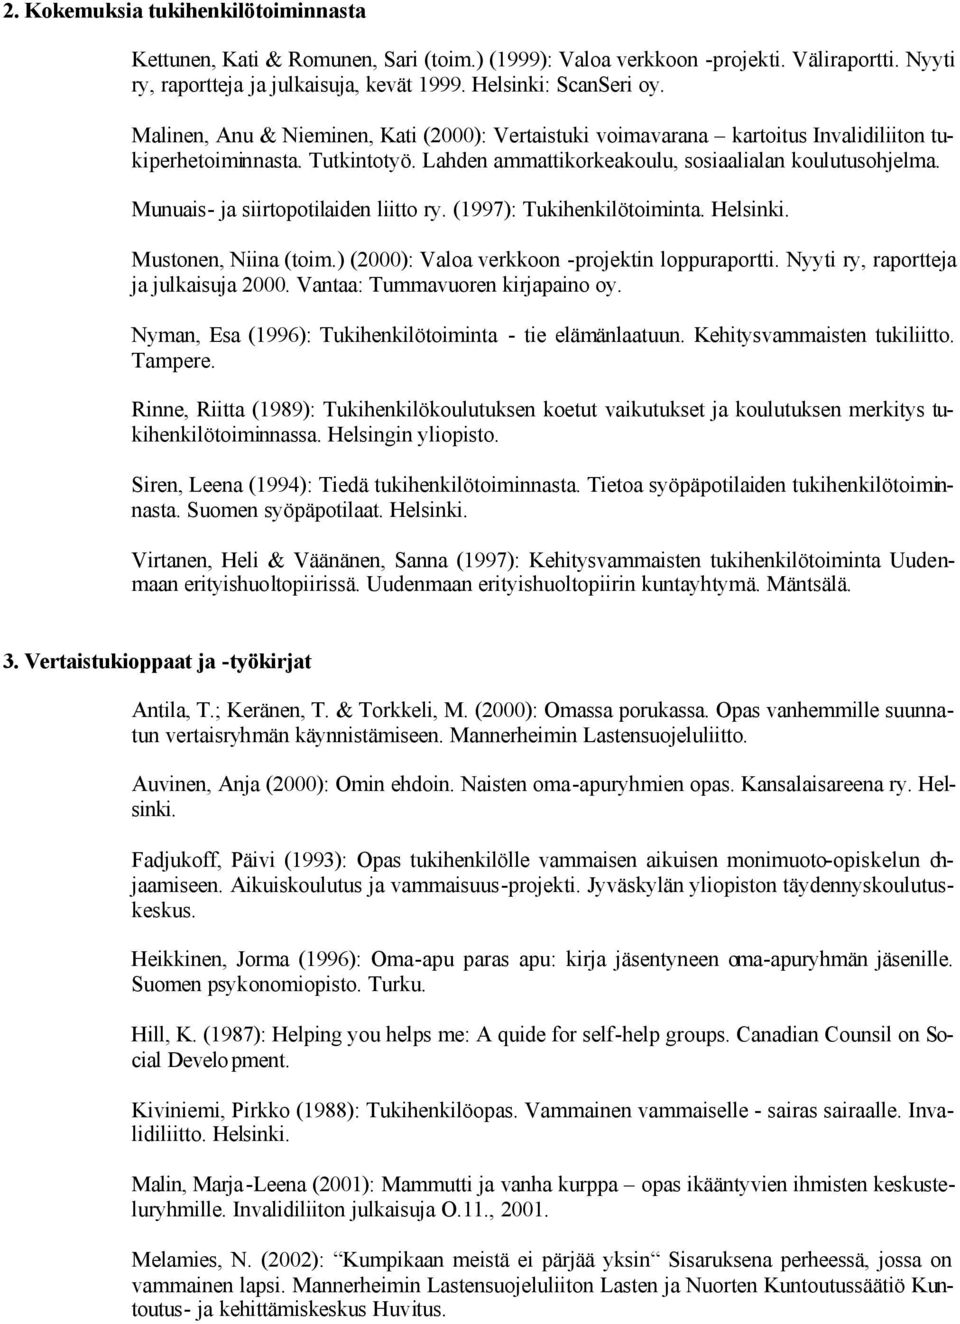 Munuais- ja siirtopotilaiden liitto ry. (1997): Tukihenkilötoiminta. Mustonen, Niina (toim.) (2000): Valoa verkkoon -projektin loppuraportti. Nyyti ry, raportteja ja julkaisuja 2000.